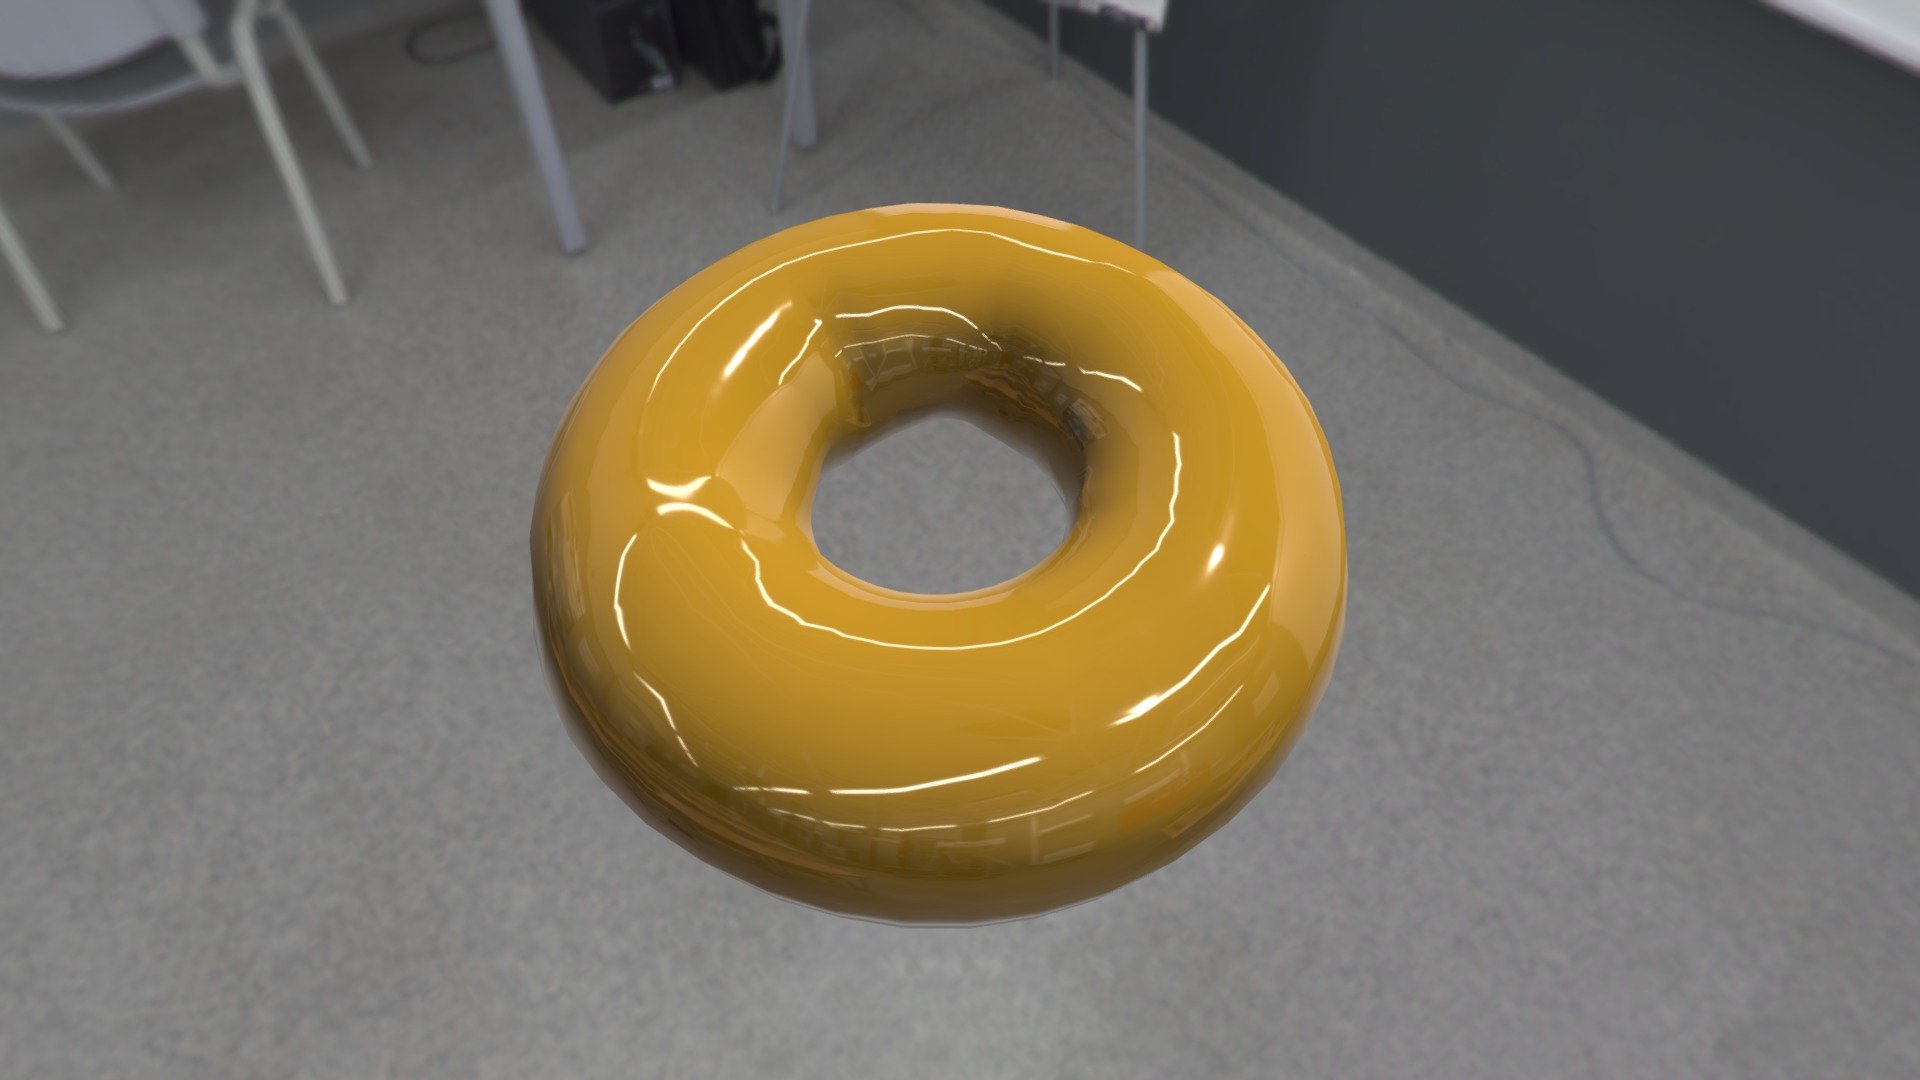 a donut created in blender from blender.org

a beginner work 3d model